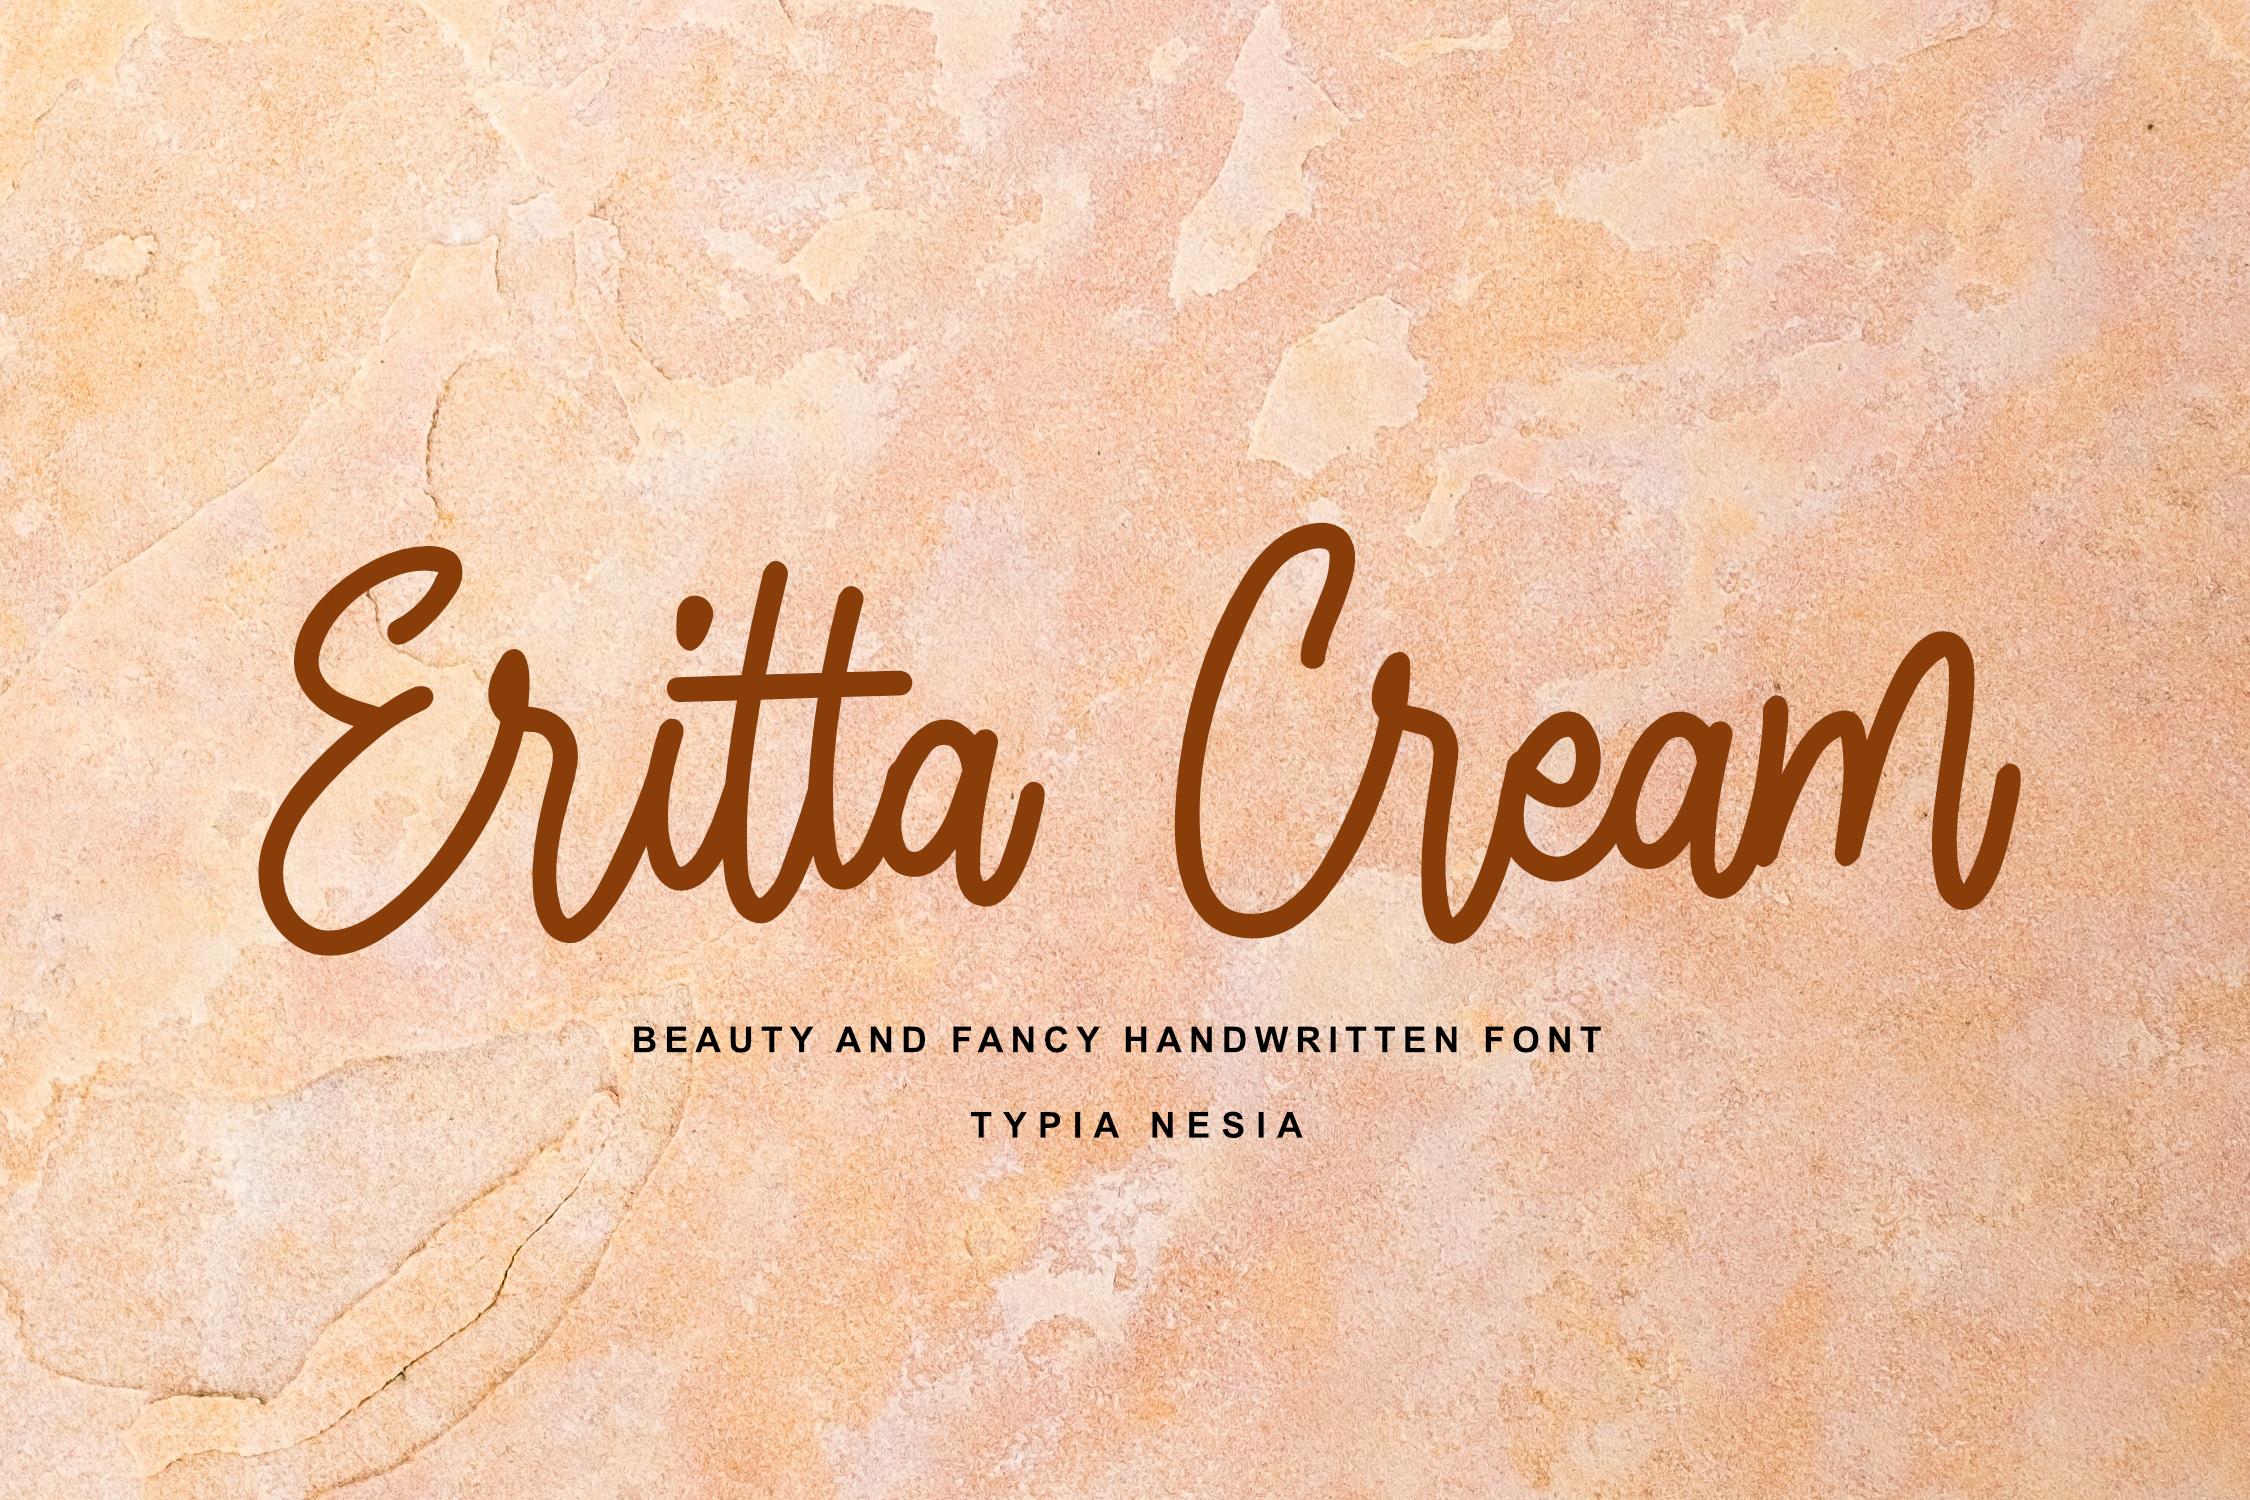 Eritta Cream Font